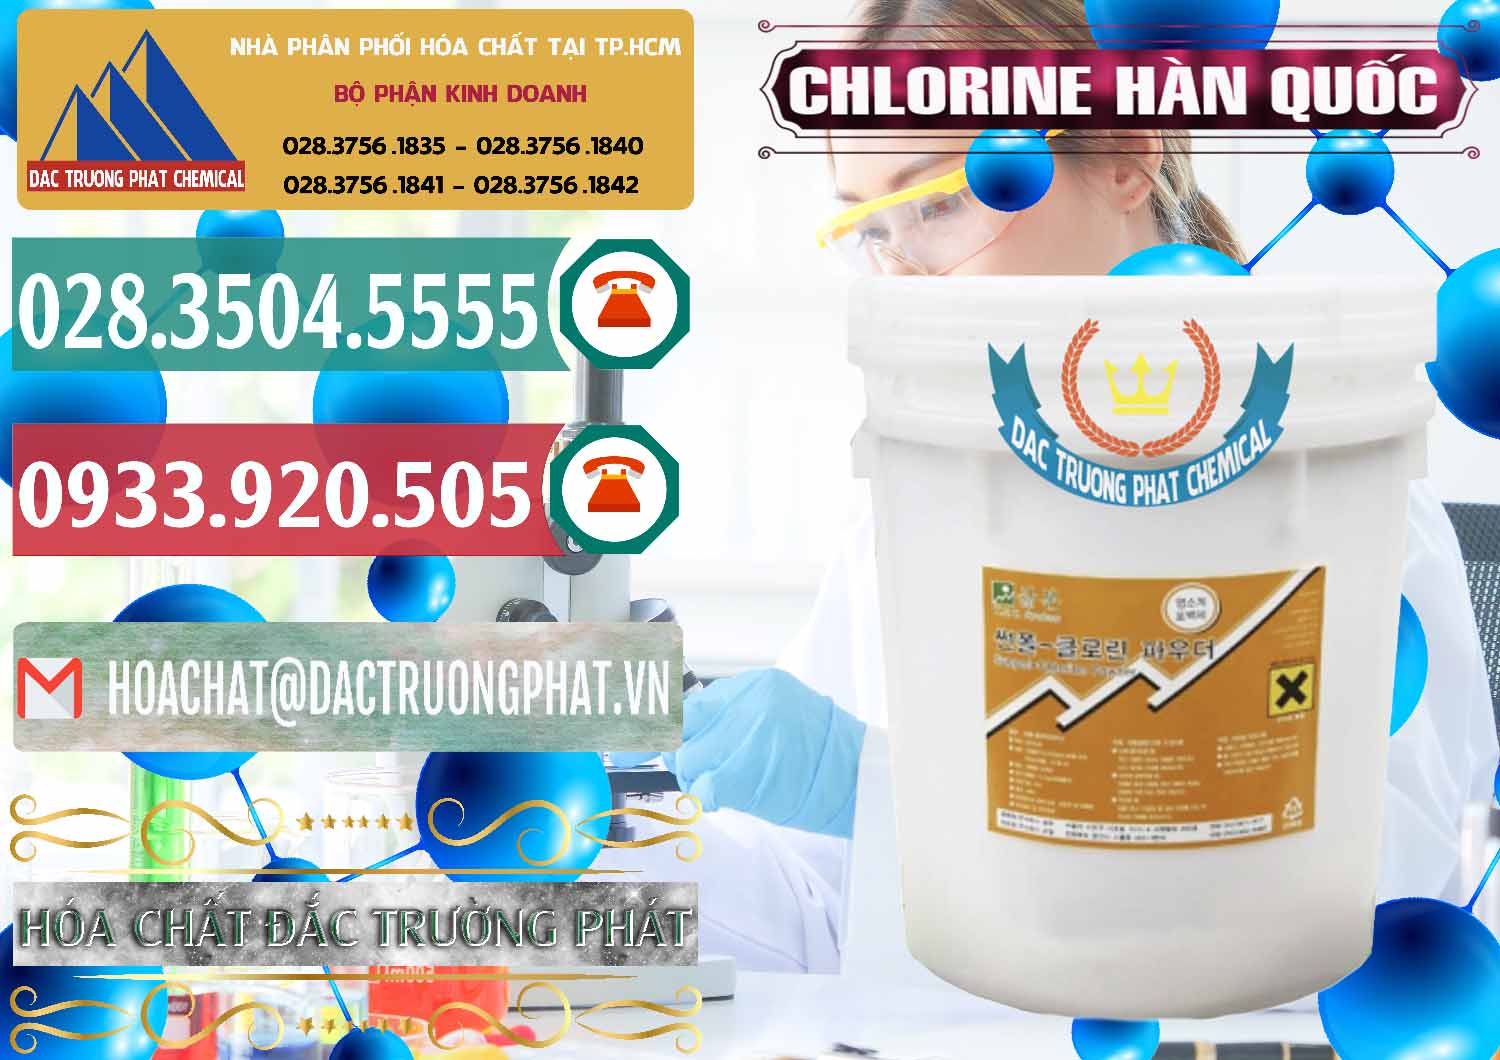 Nơi chuyên bán và phân phối Chlorine – Clorin 70% Hàn Quốc Korea - 0345 - Chuyên bán & phân phối hóa chất tại TP.HCM - muabanhoachat.vn